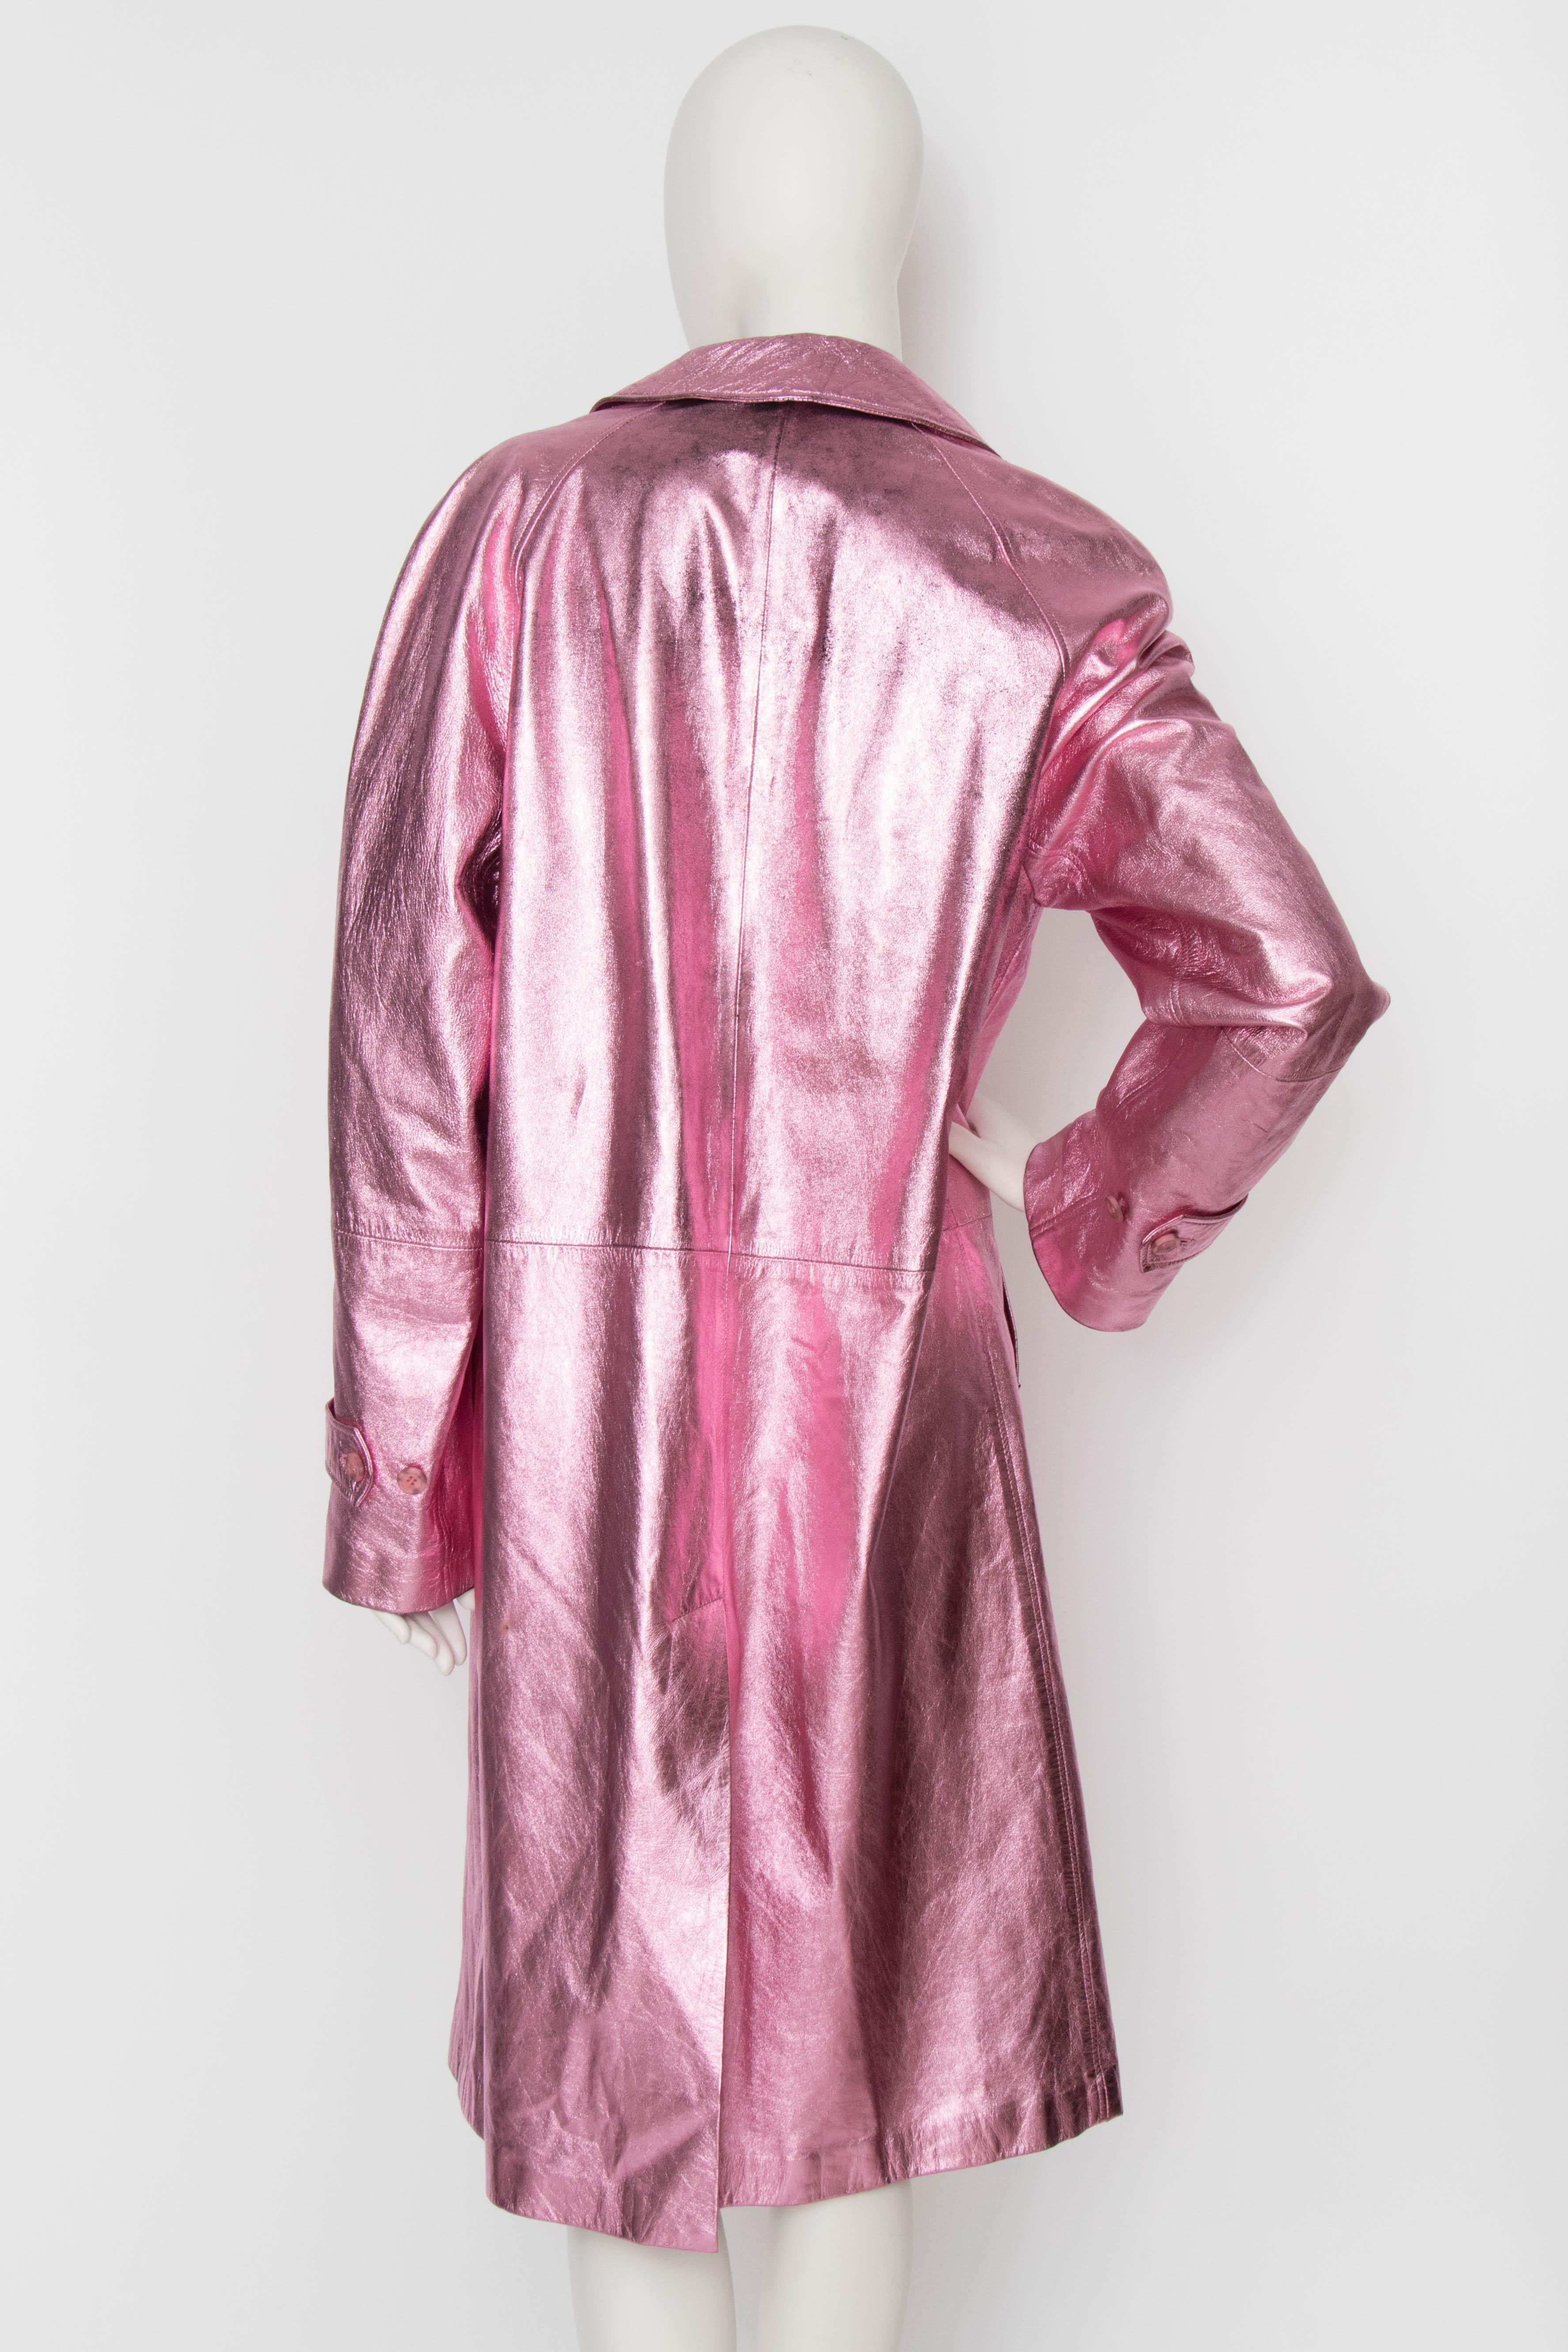 pink metallic leather jacket